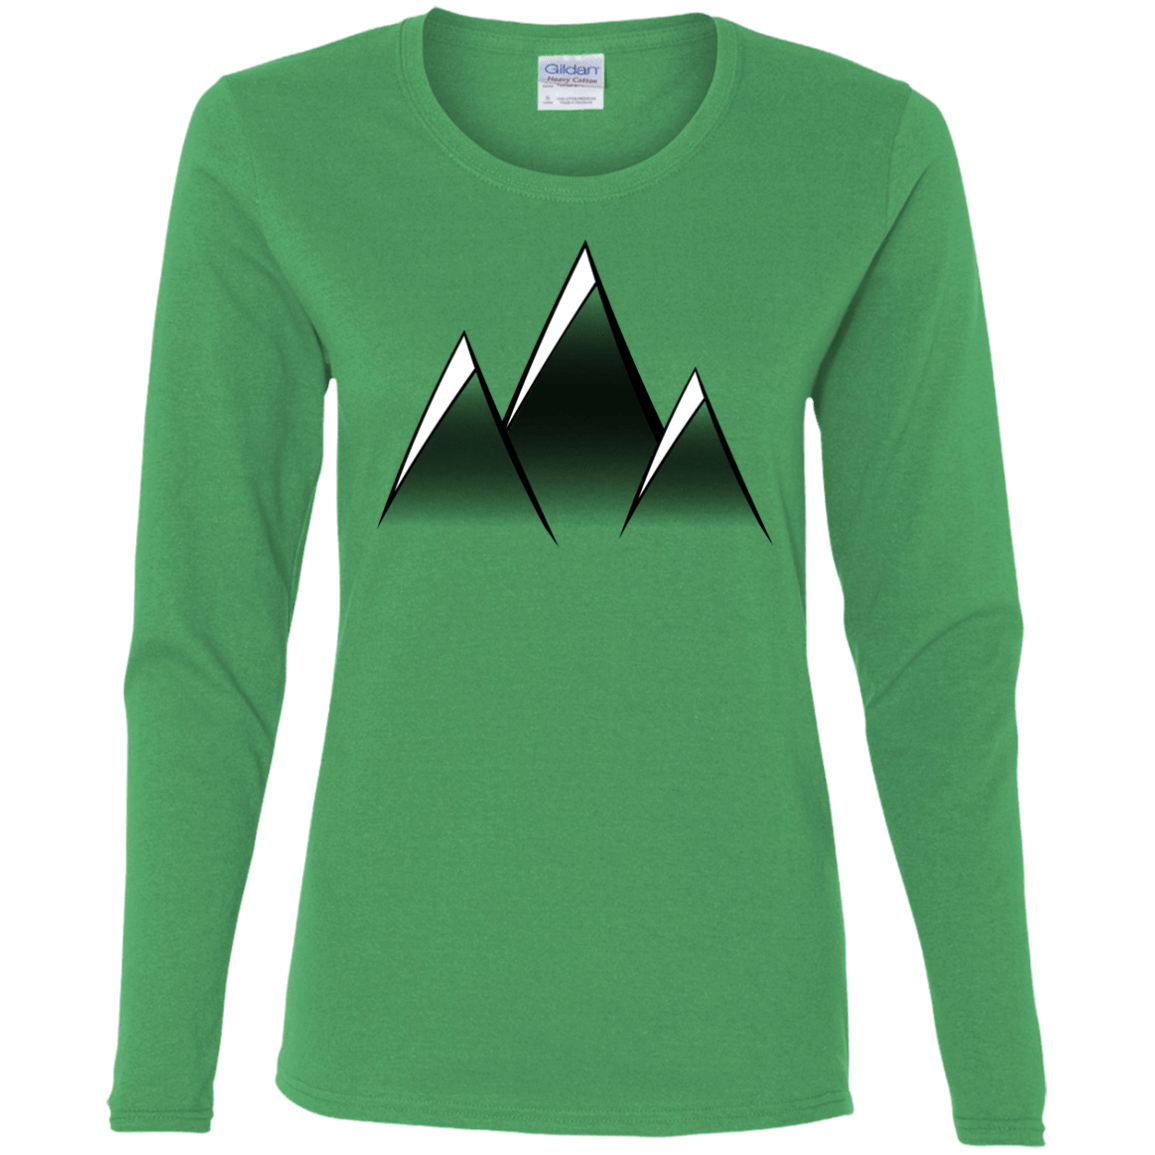 T-Shirts Irish Green / S Mountain Blades Women's Long Sleeve T-Shirt